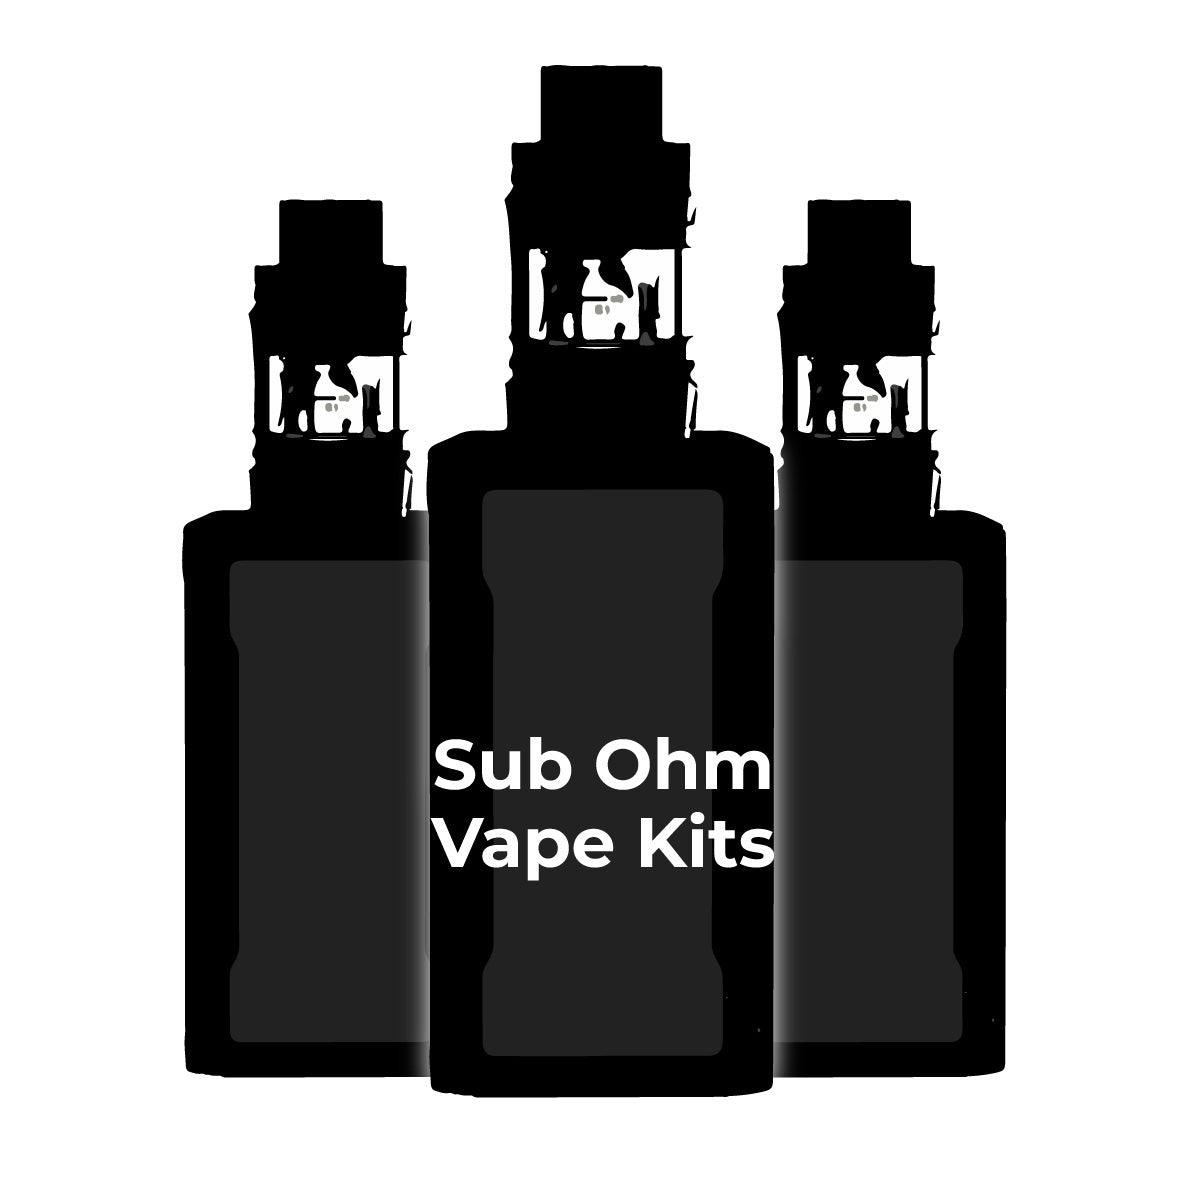 Advanced Kits - Buy Sub Ohm Vape Kits & More